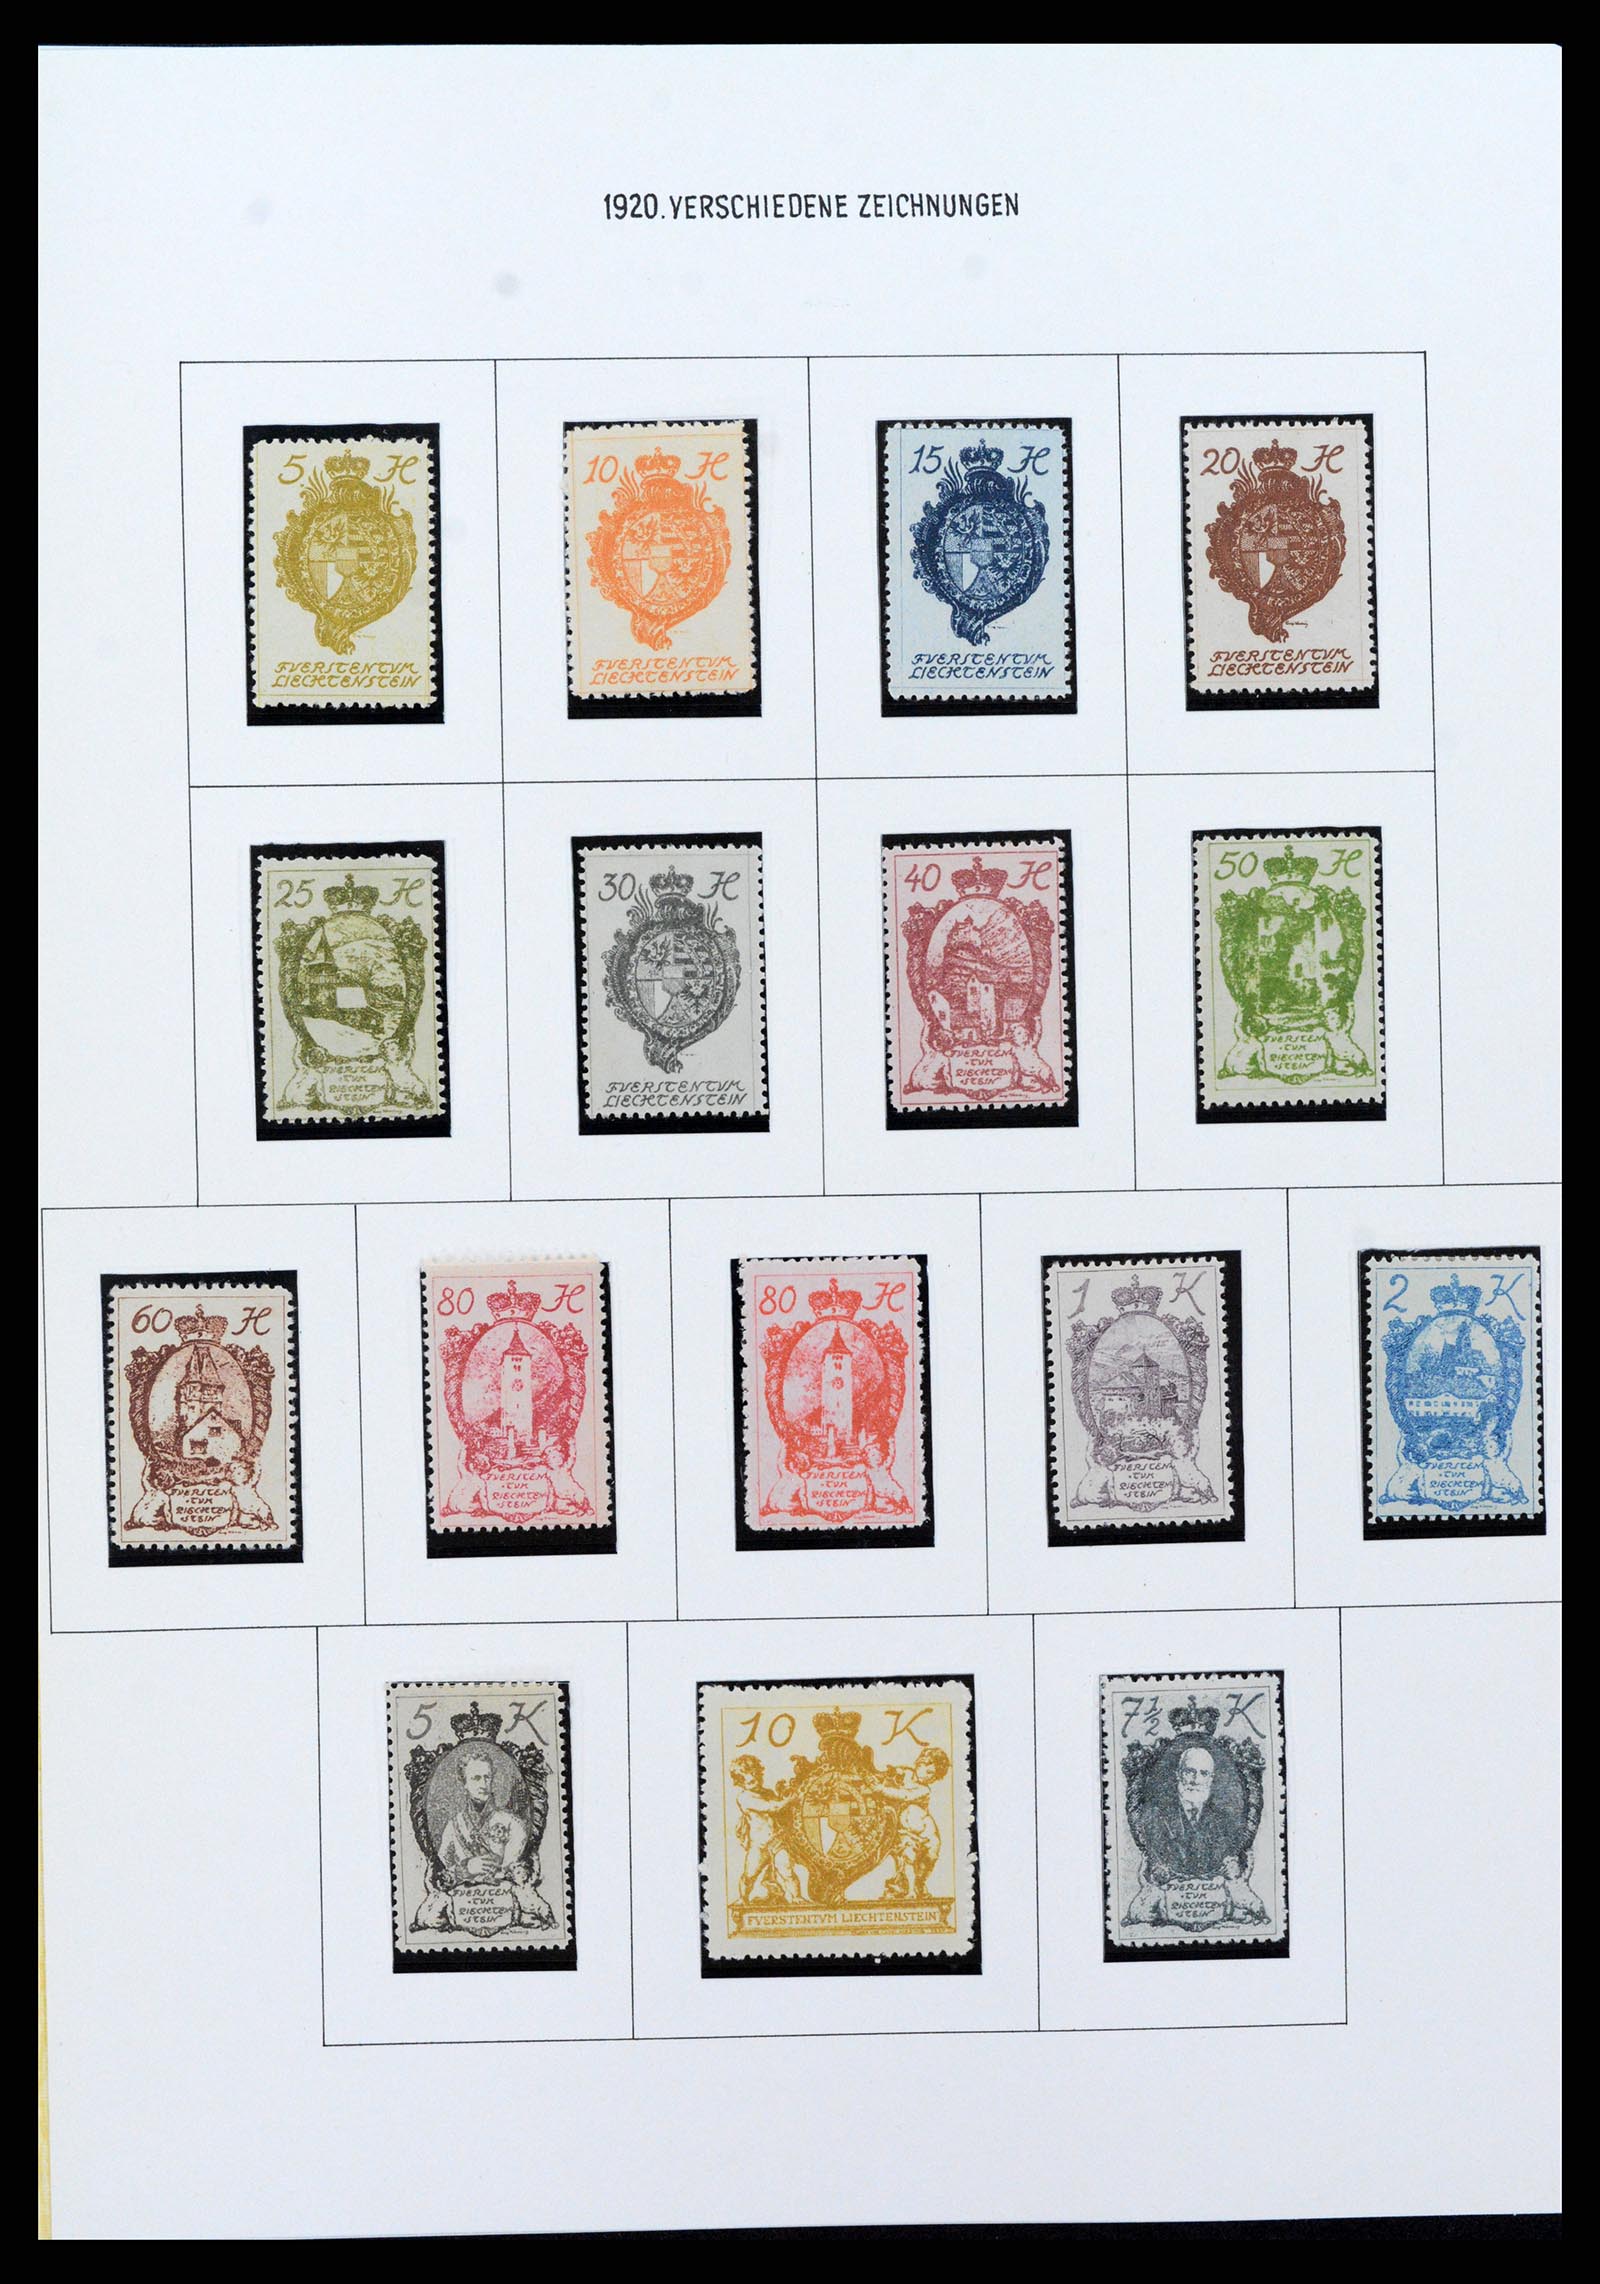 37150 0076 - Stamp collection 37150 Liechtenstein supercollection 1912-1962.